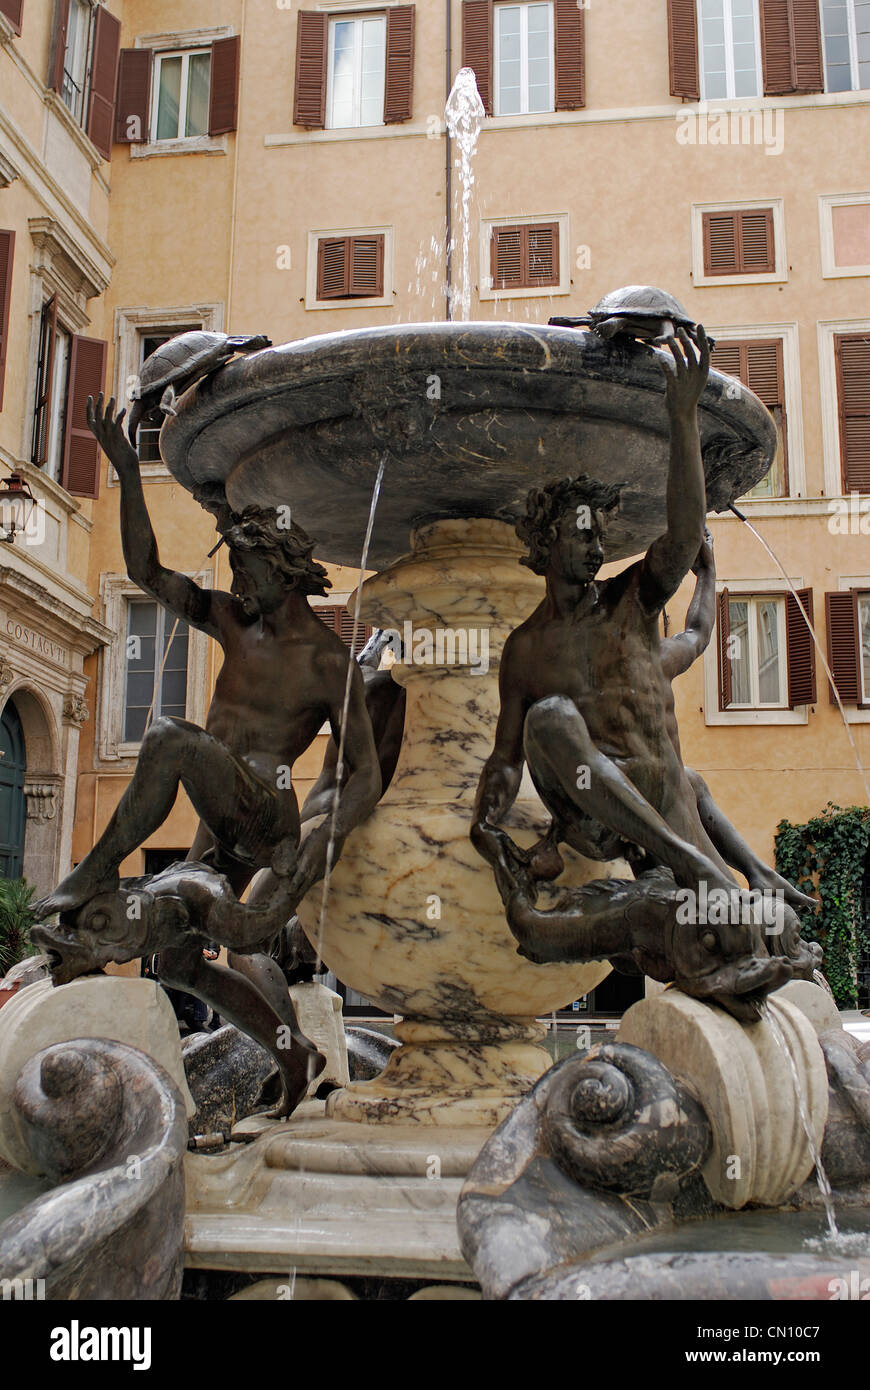 Fontana delle Tartarughe, designed by Giacomo della Porta. Piazza Mattei, Rome, Lazio, Italy Stock Photo